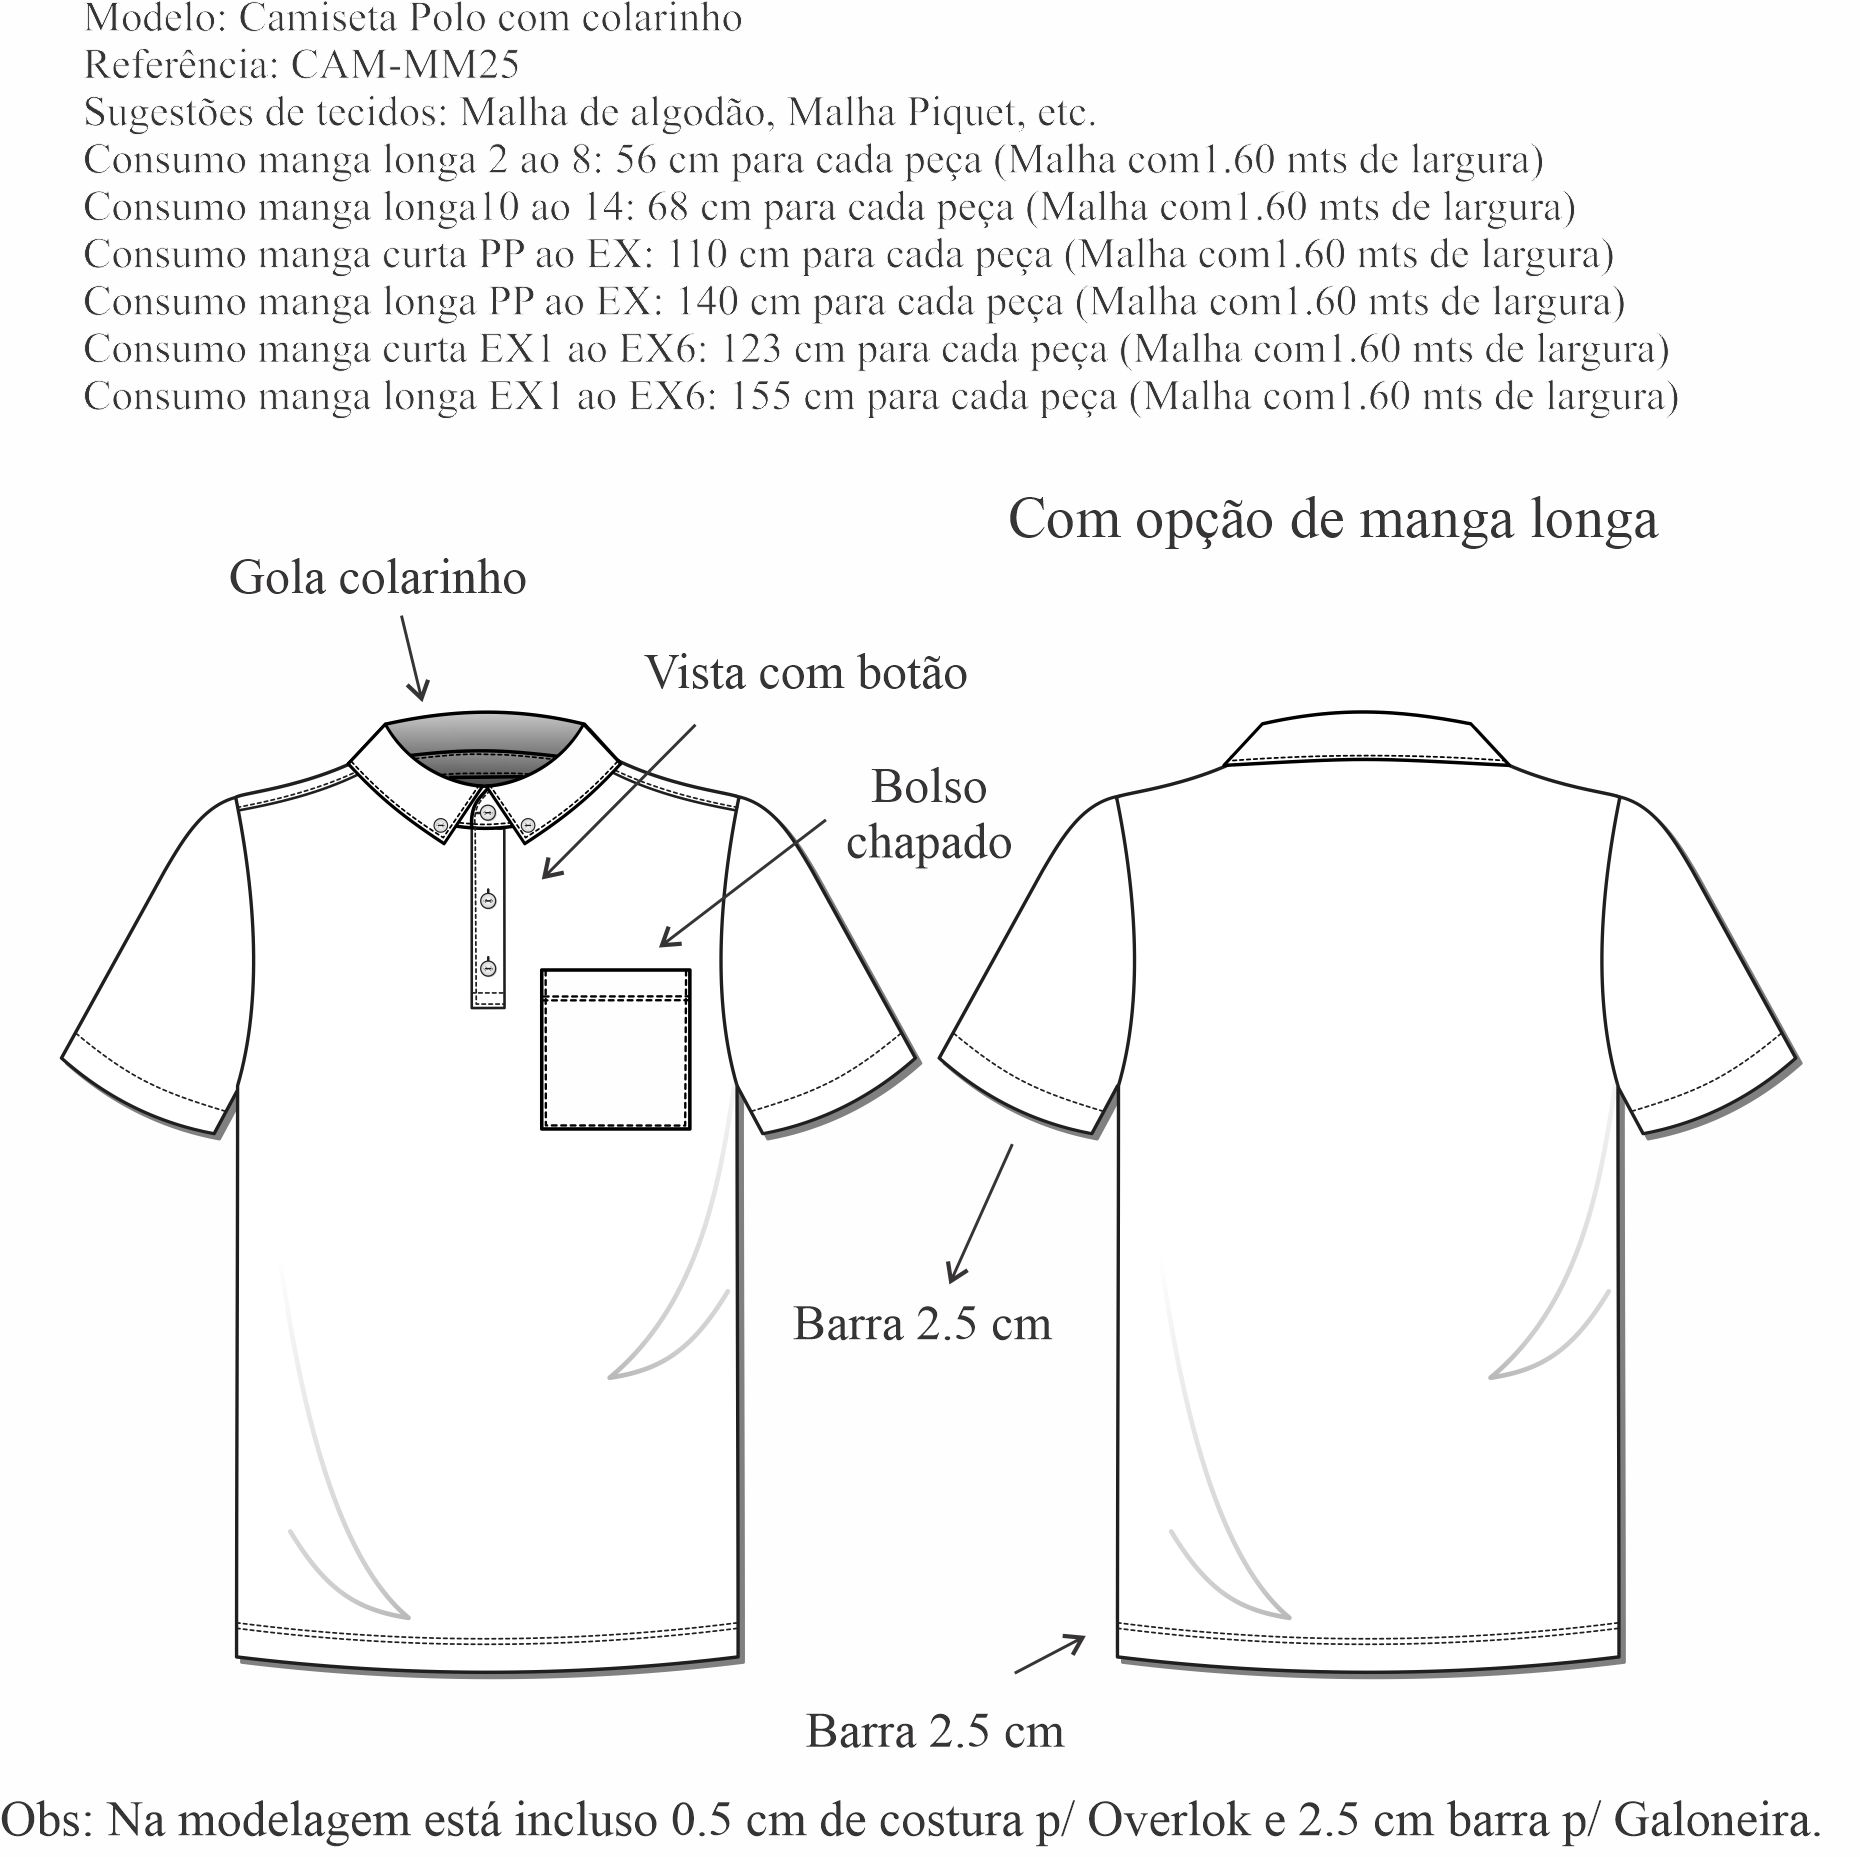 Camiseta Polo Maculina Com Colarinho (CAM-MM25) - Foto 1